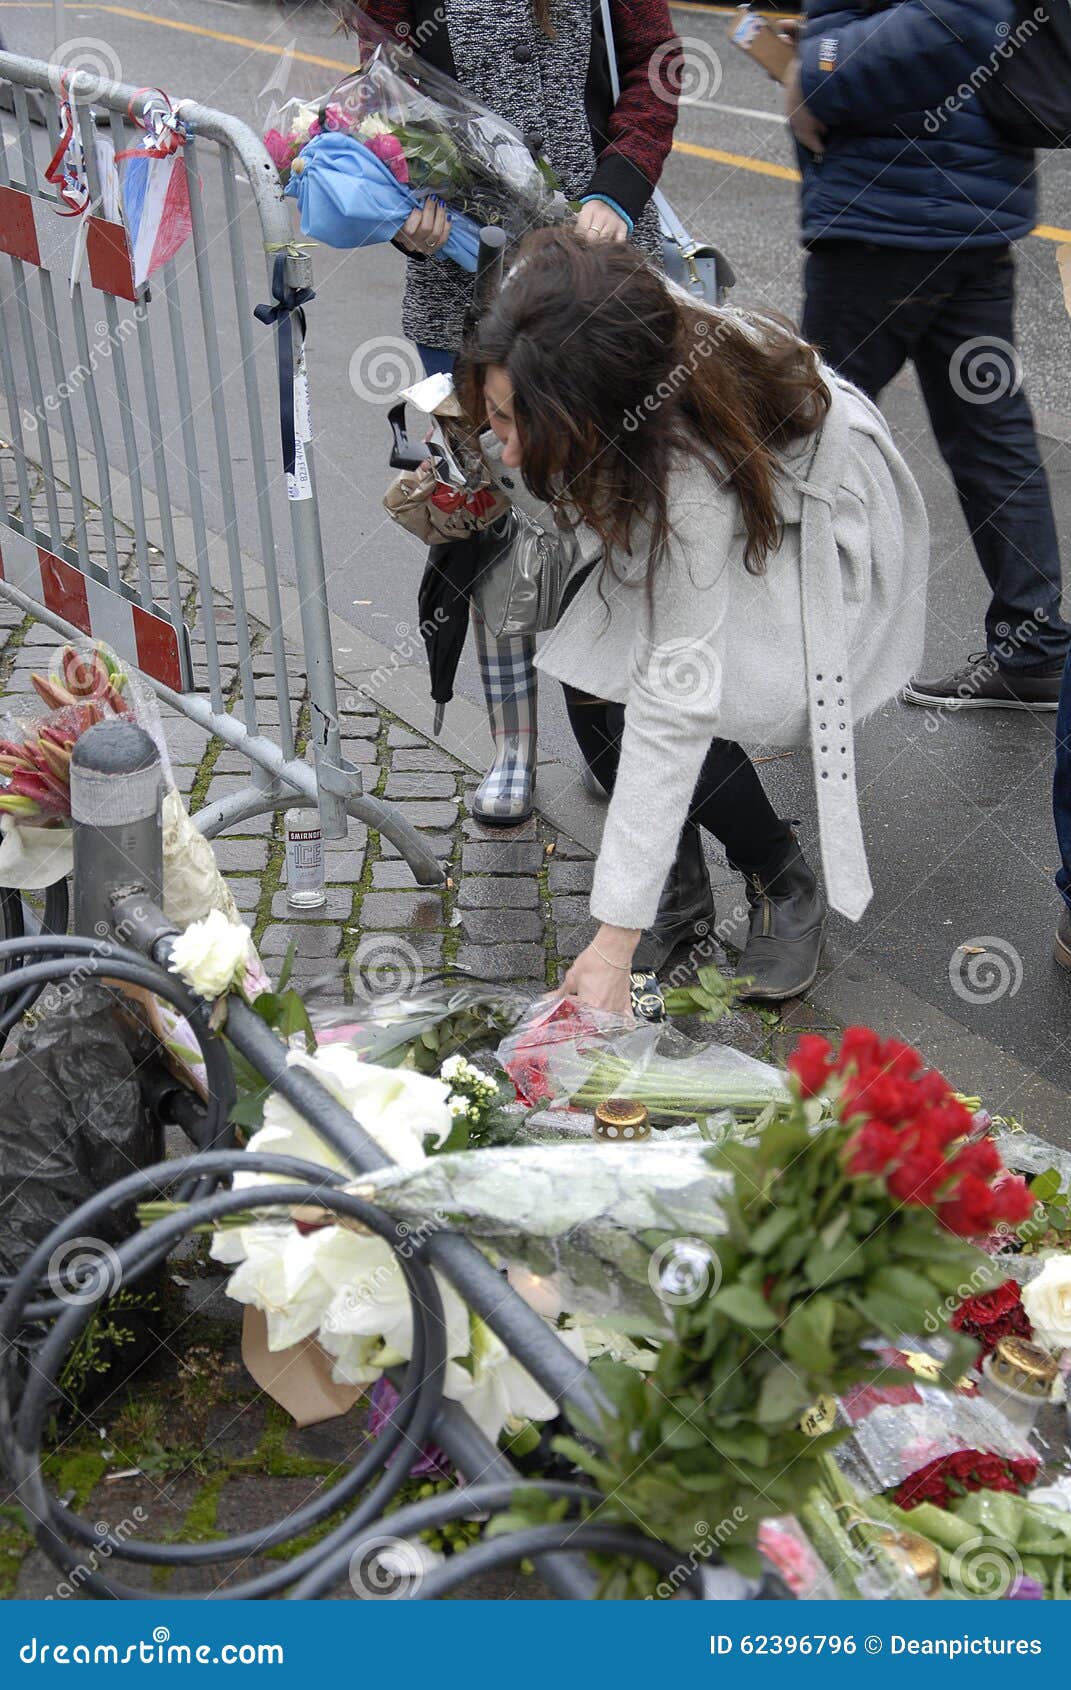 ΤΡΟΜΟΣ ΠΟΥ ΕΠΙΤΙΘΕΤΑΙ ΣΕ PARIS_COPENHAGEN ΔΑΝΊΑ. Η γαλλική πρεσβεία φρουράς στάσεων αστυνομίας της Κοπεγχάγης/της Δανίας _στις 16 Νοεμβρίου 2015 _Danish και η γαλλική σημαία στο μισό ιστό στην πρεσβεία και οι άνθρωποι προσεύχονται και βάζοντας τα λουλούδια σε γαλλικό Emassy για την υποστήριξη και solidarty με τους γαλλικούς λαούς Terrorit που επιτίθεται στο Παρίσι Γαλλία